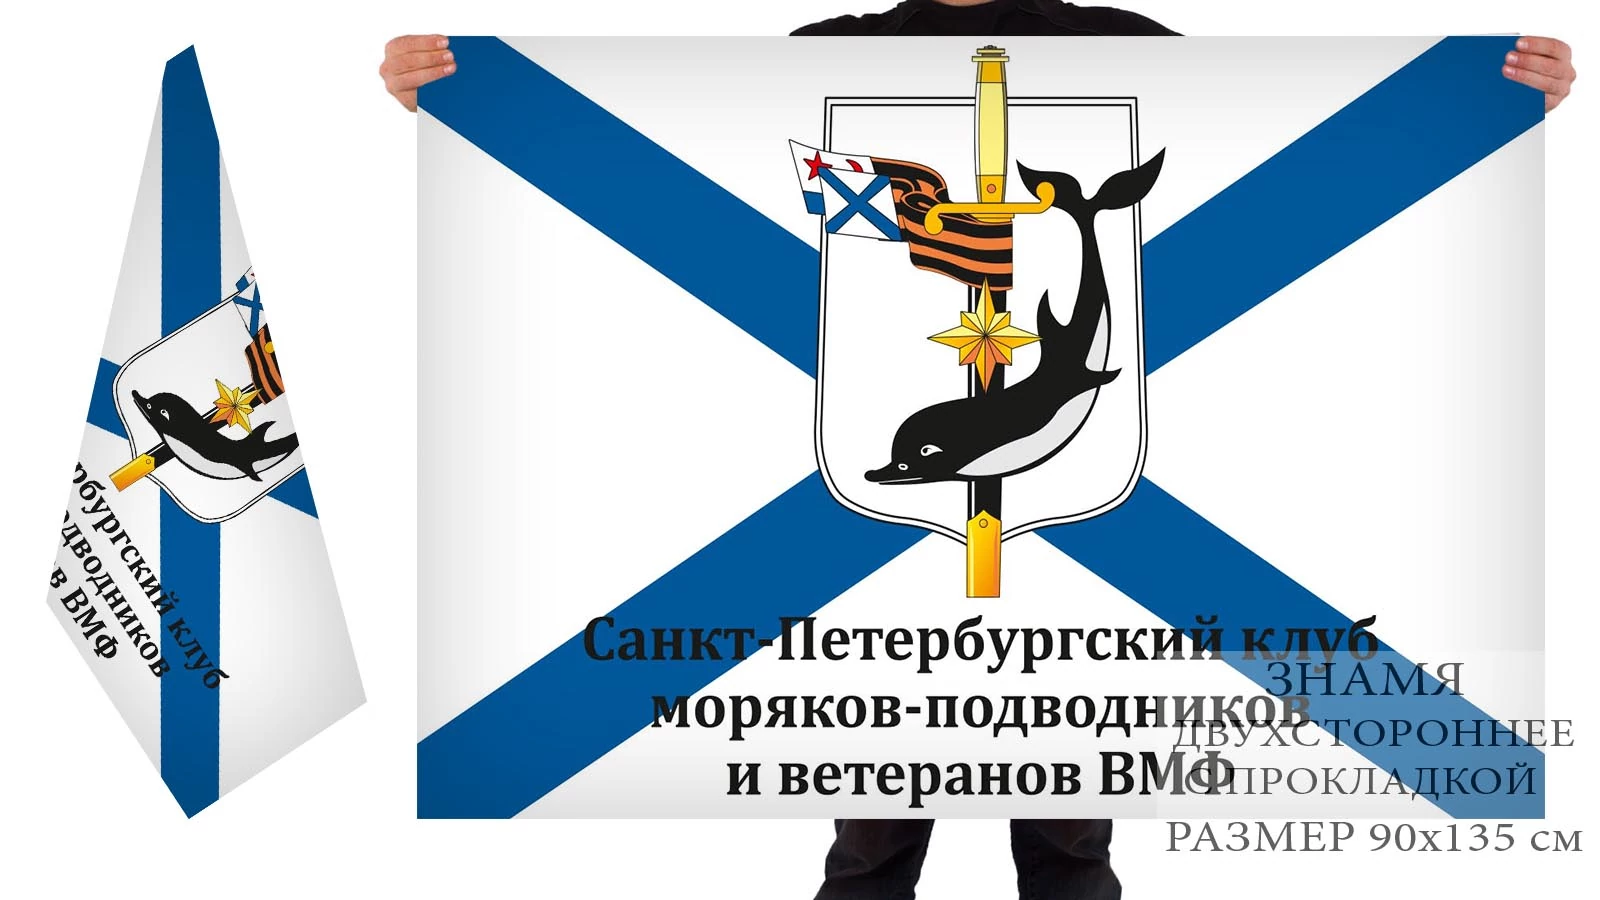 Двусторонний флаг клуба моряков-подводников и ветеранов ВМФ Санкт-Петербурга